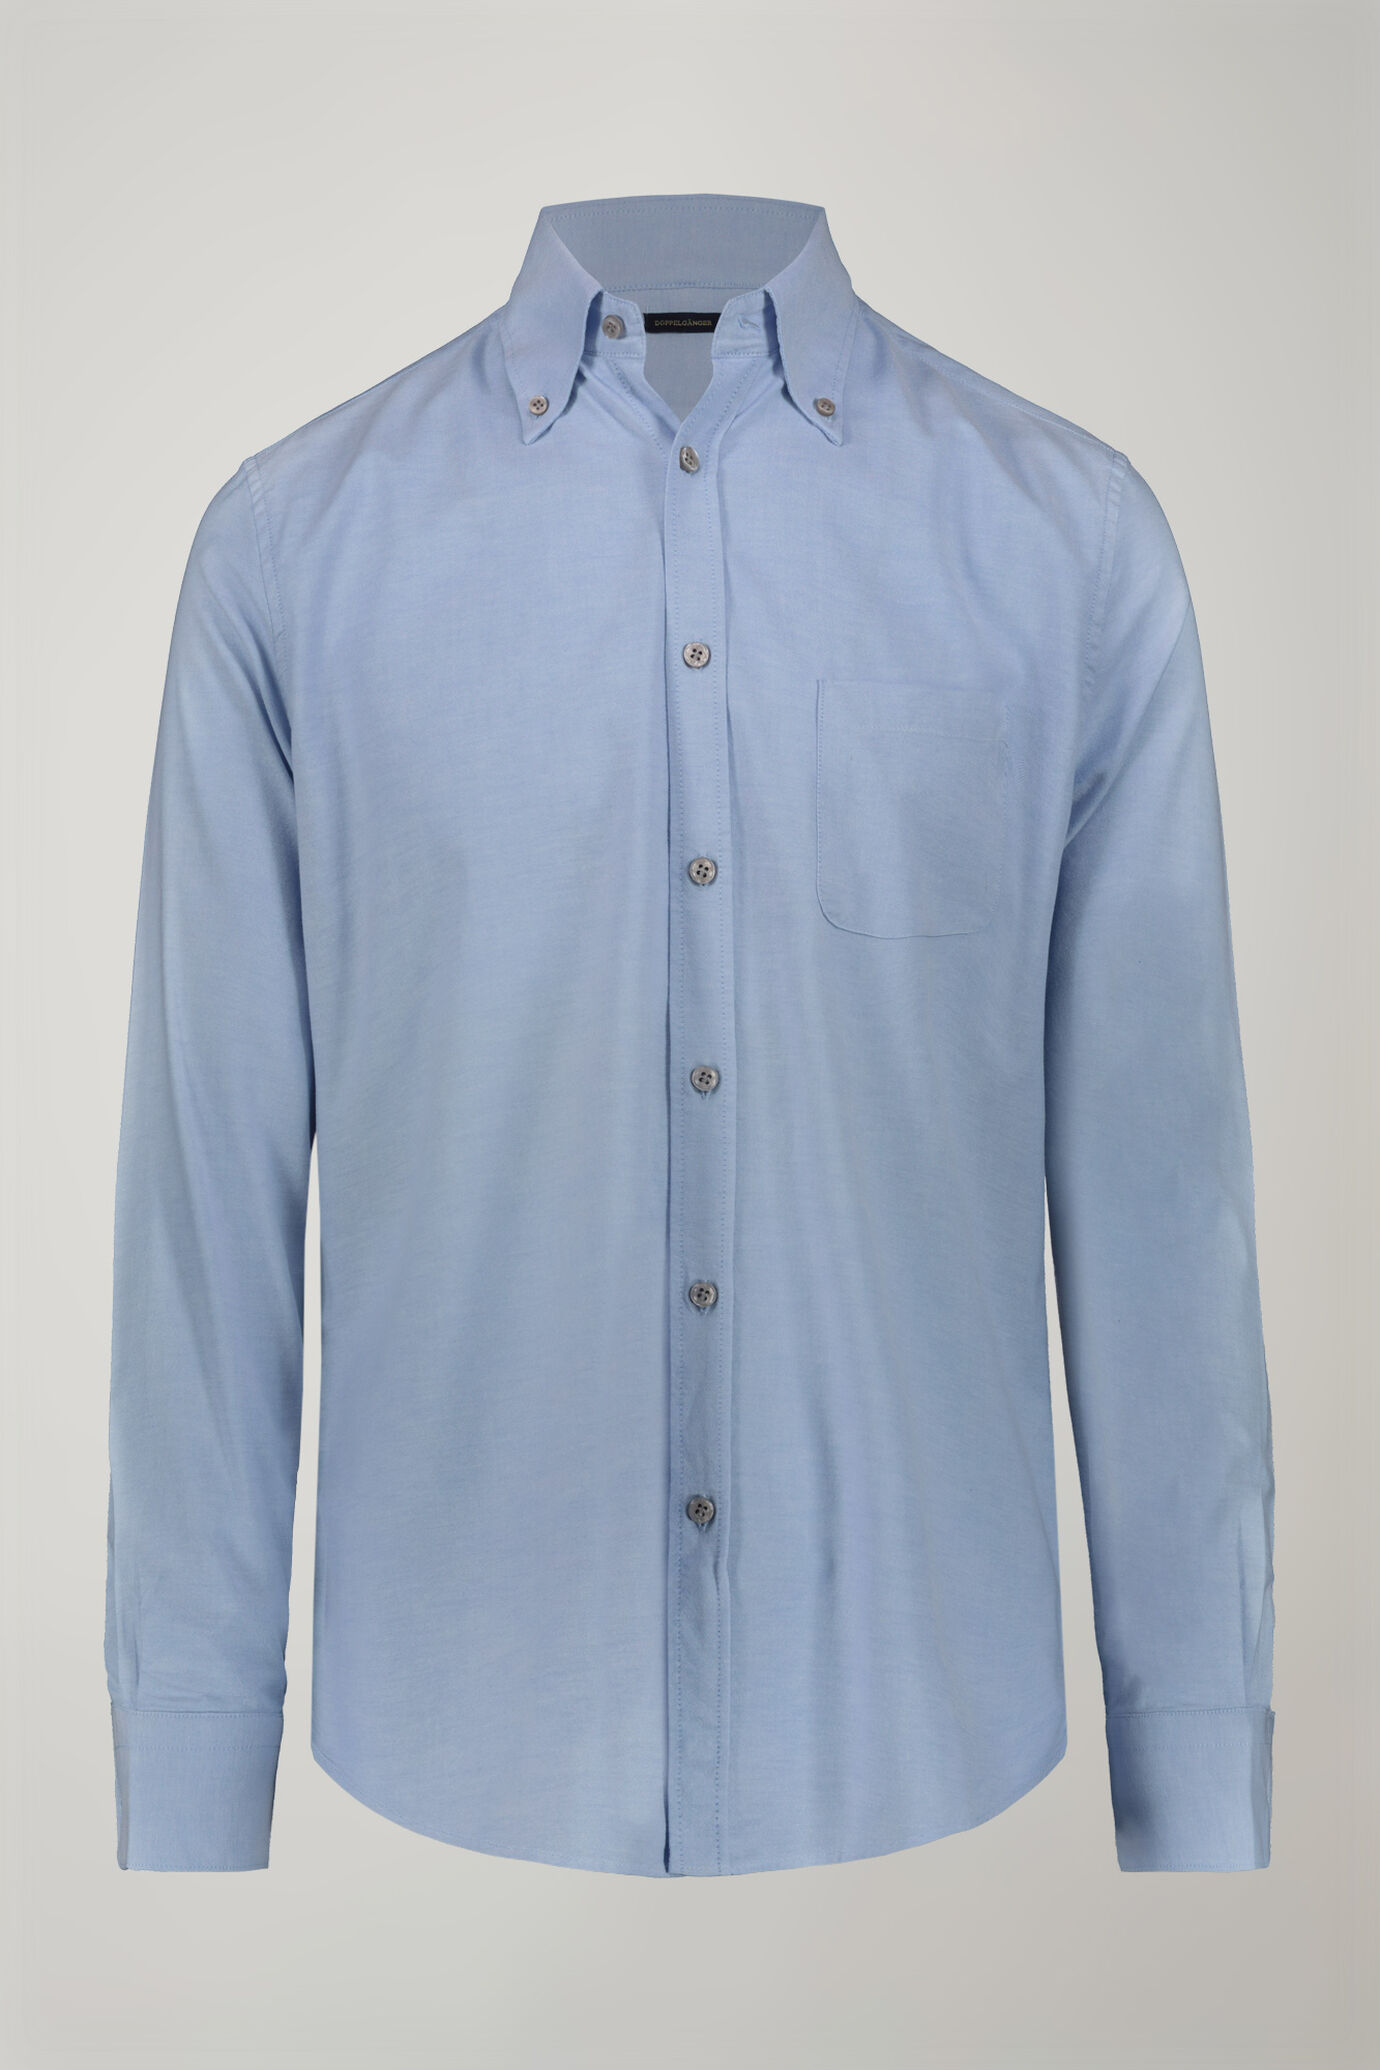 Camicia classica uomo collo button down tessuto Oxford rigato ultra leggero tinta unita comfort fit image number 4